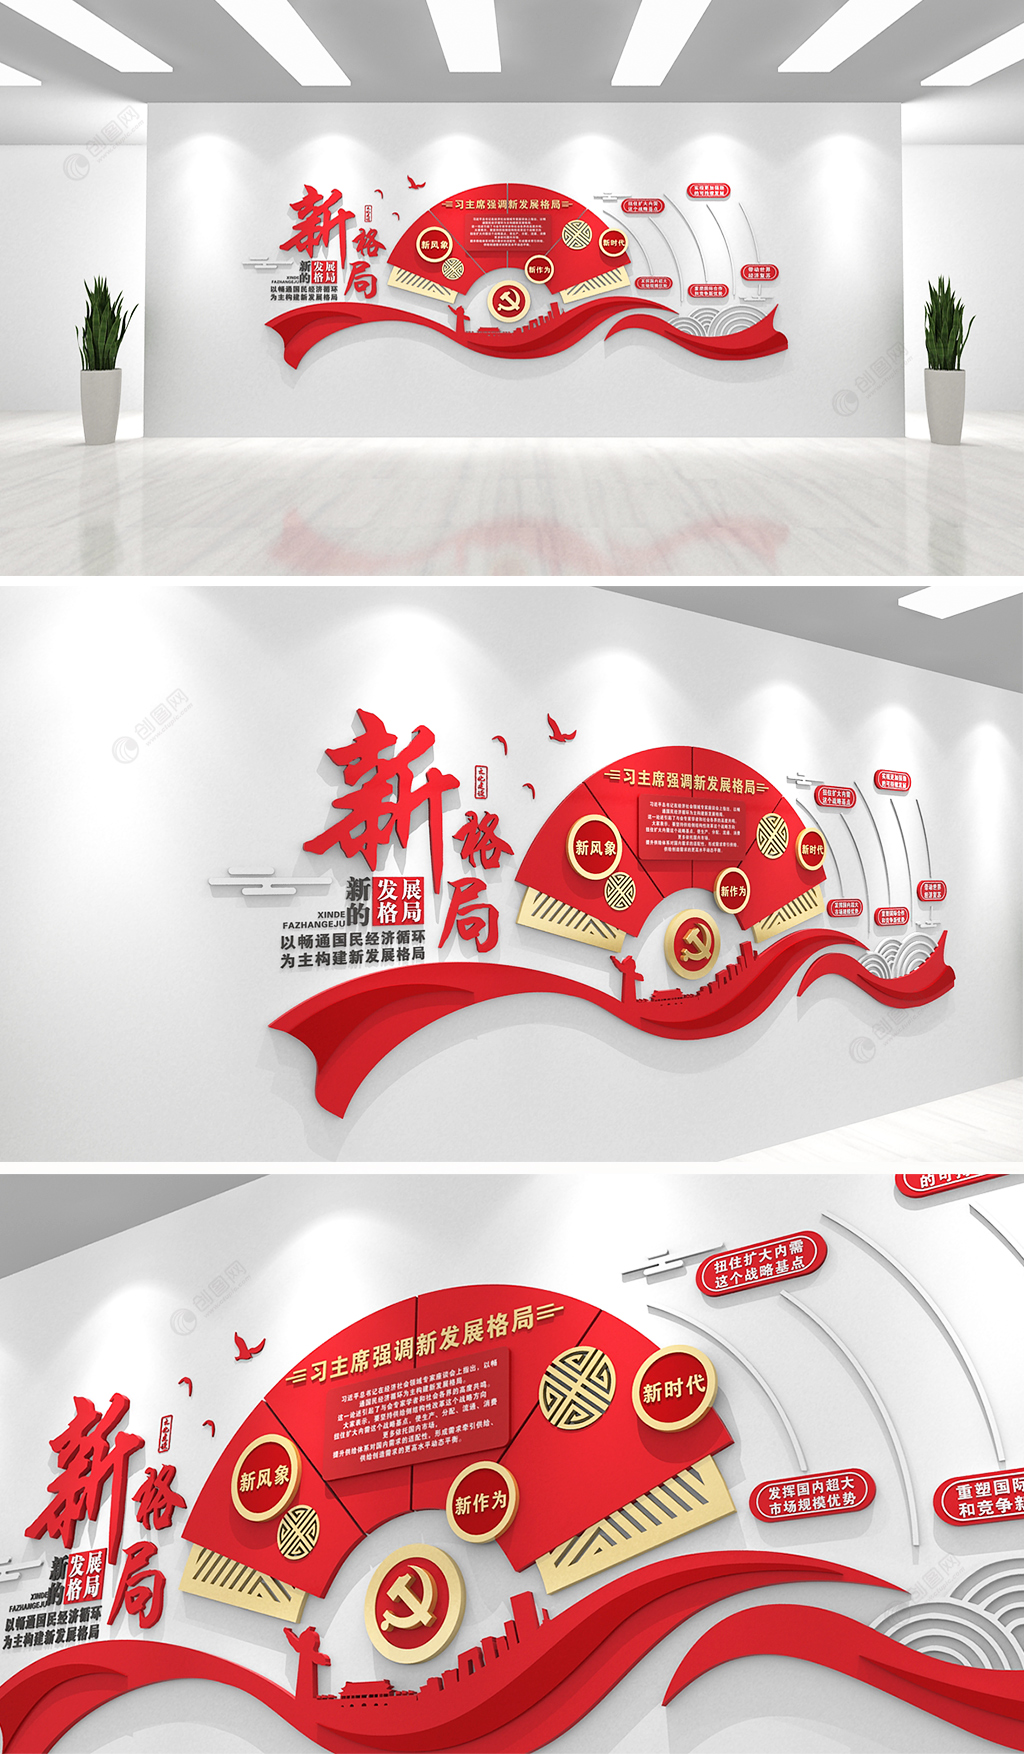 红色大气扇形房间发展新格局党建文化墙设计